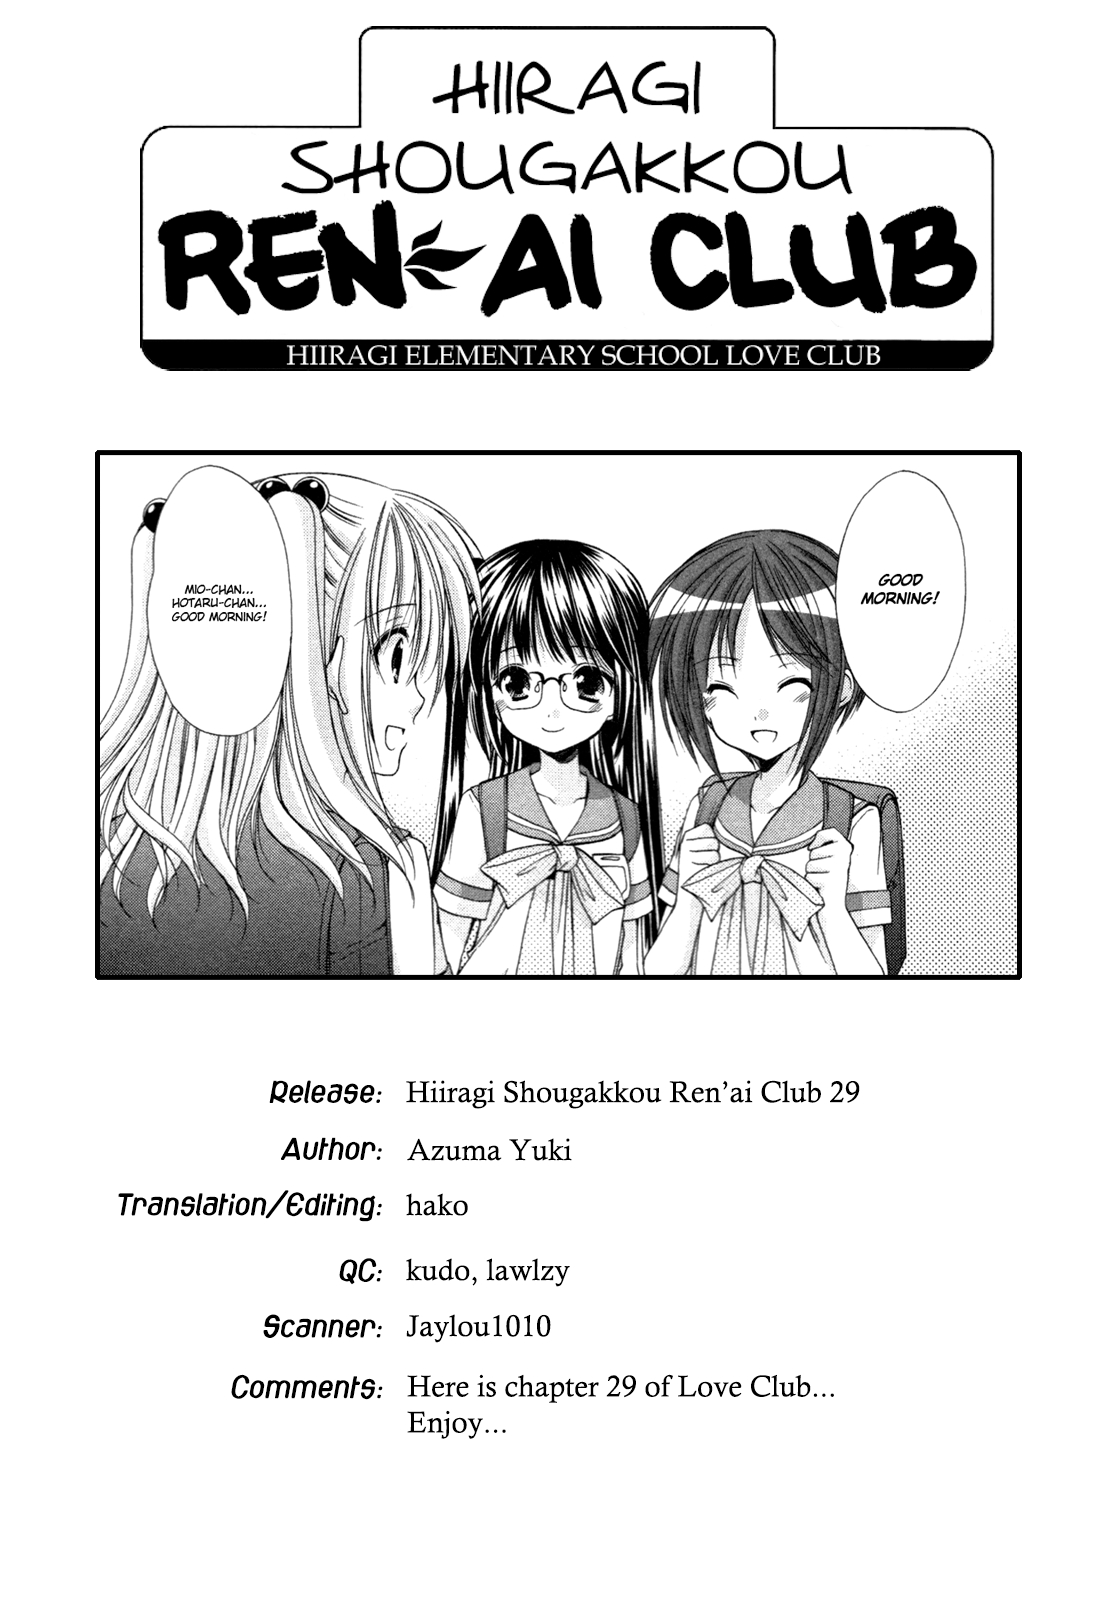 Hiiragi Shougakkou Ren’ai Club Vol. 5 Ch. 29 Not an Adult